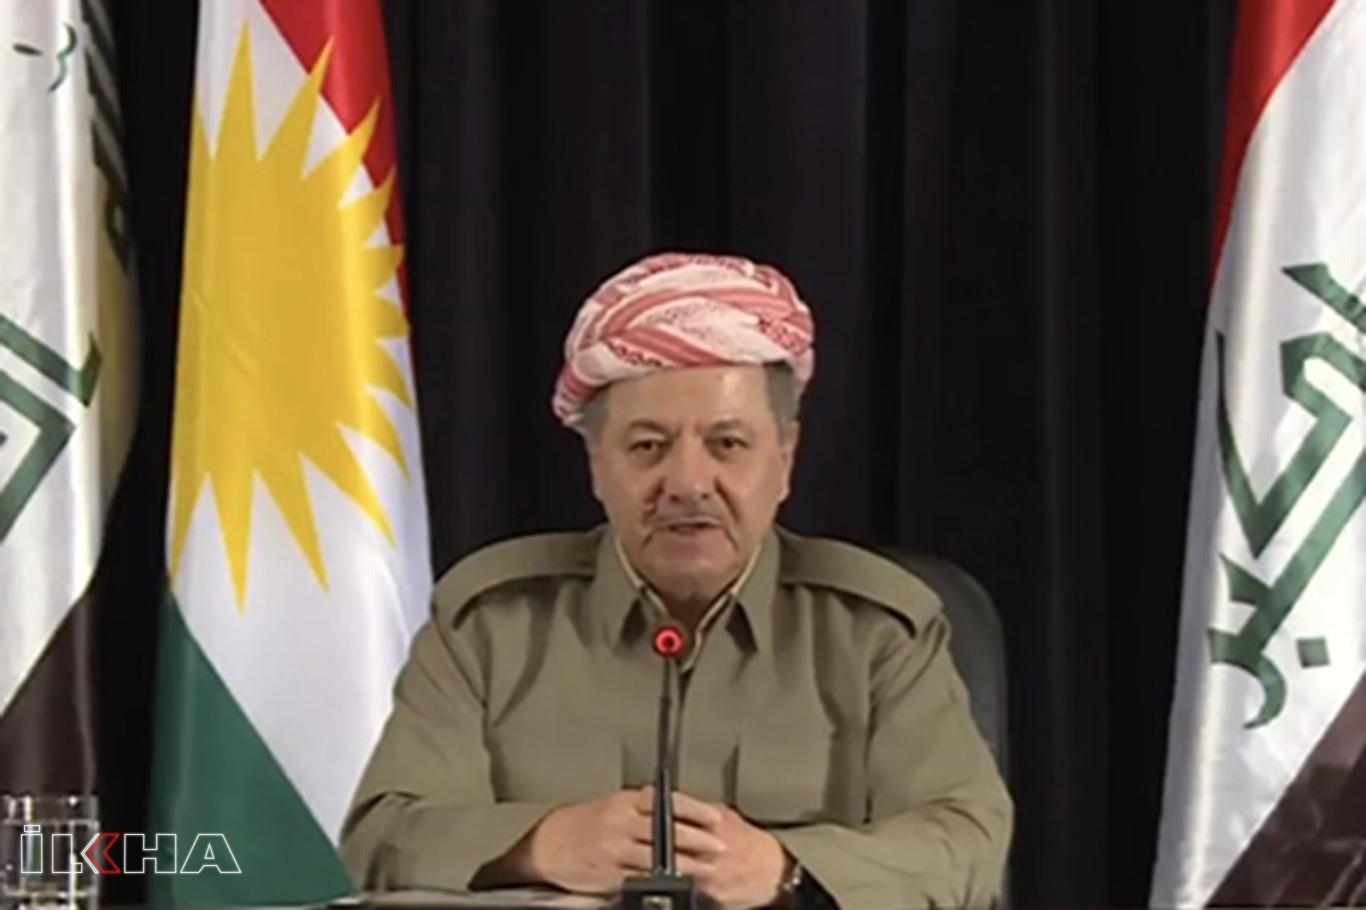 Mesud Barzani, Elâzığ depremi ile ilgili baş sağlığı diledi: Acılarını paylaşıyoruz